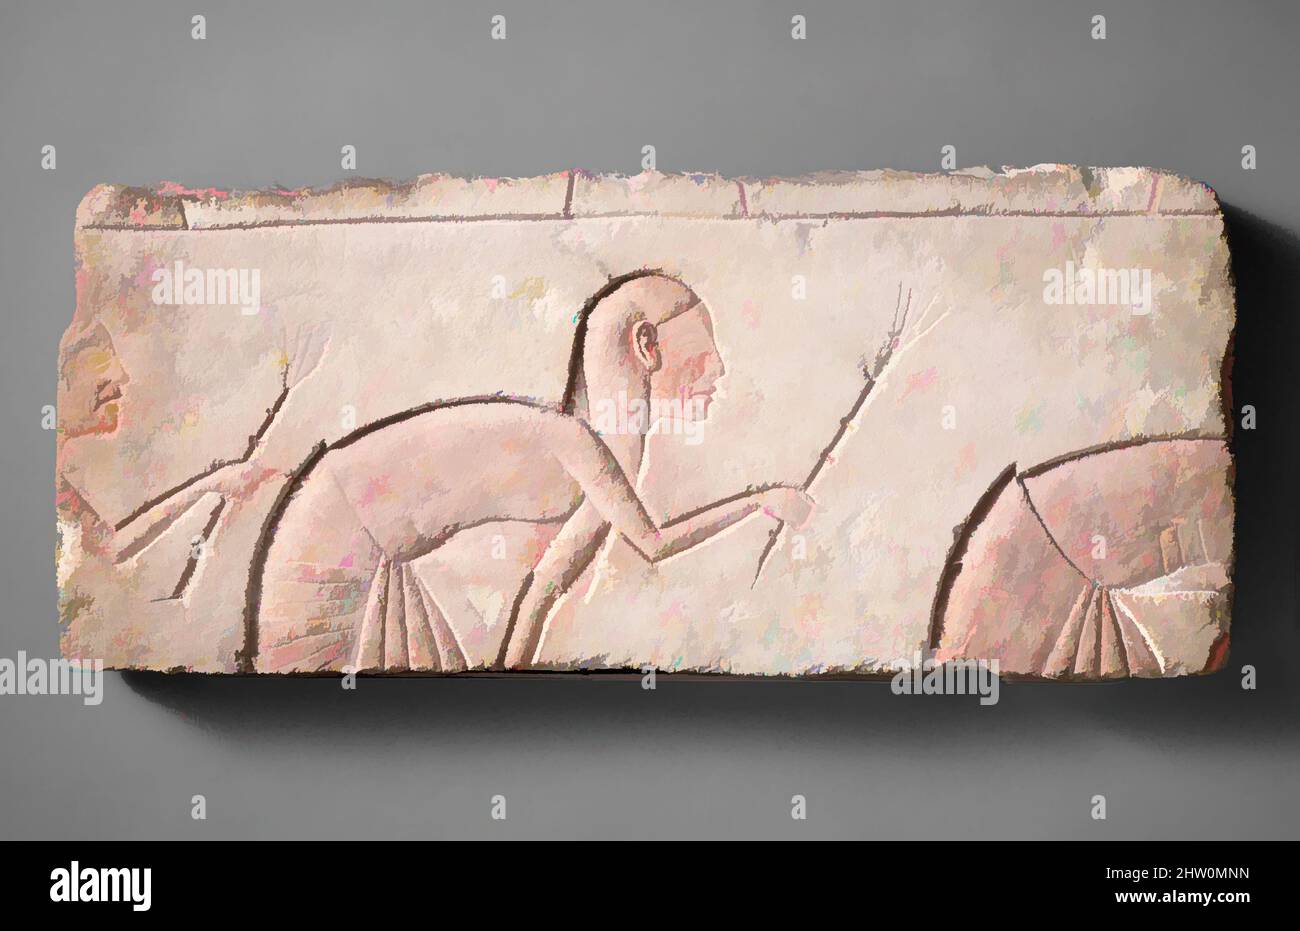 Kunst inspiriert von Verbeugten, New Kingdom, Amarna-Zeit, Dynastie 18, ca. 1353–1336 v. Chr., aus Ägypten; wahrscheinlich aus Mittelägypten, Hermopolis (Ashmunein; Khemenu); wahrscheinlich ursprünglich aus Amarna (Akhetaten), Kalkstein, Farbe, H. 22,8 cm (9 in); W. 54 cm (21 1/4 in), in diesem, Classic Works modernisiert von Artotop mit einem Schuss Moderne. Formen, Farbe und Wert, auffällige visuelle Wirkung auf Kunst. Emotionen durch Freiheit von Kunstwerken auf zeitgemäße Weise. Eine zeitlose Botschaft, die eine wild kreative neue Richtung verfolgt. Künstler, die sich dem digitalen Medium zuwenden und die Artotop NFT erschaffen Stockfoto